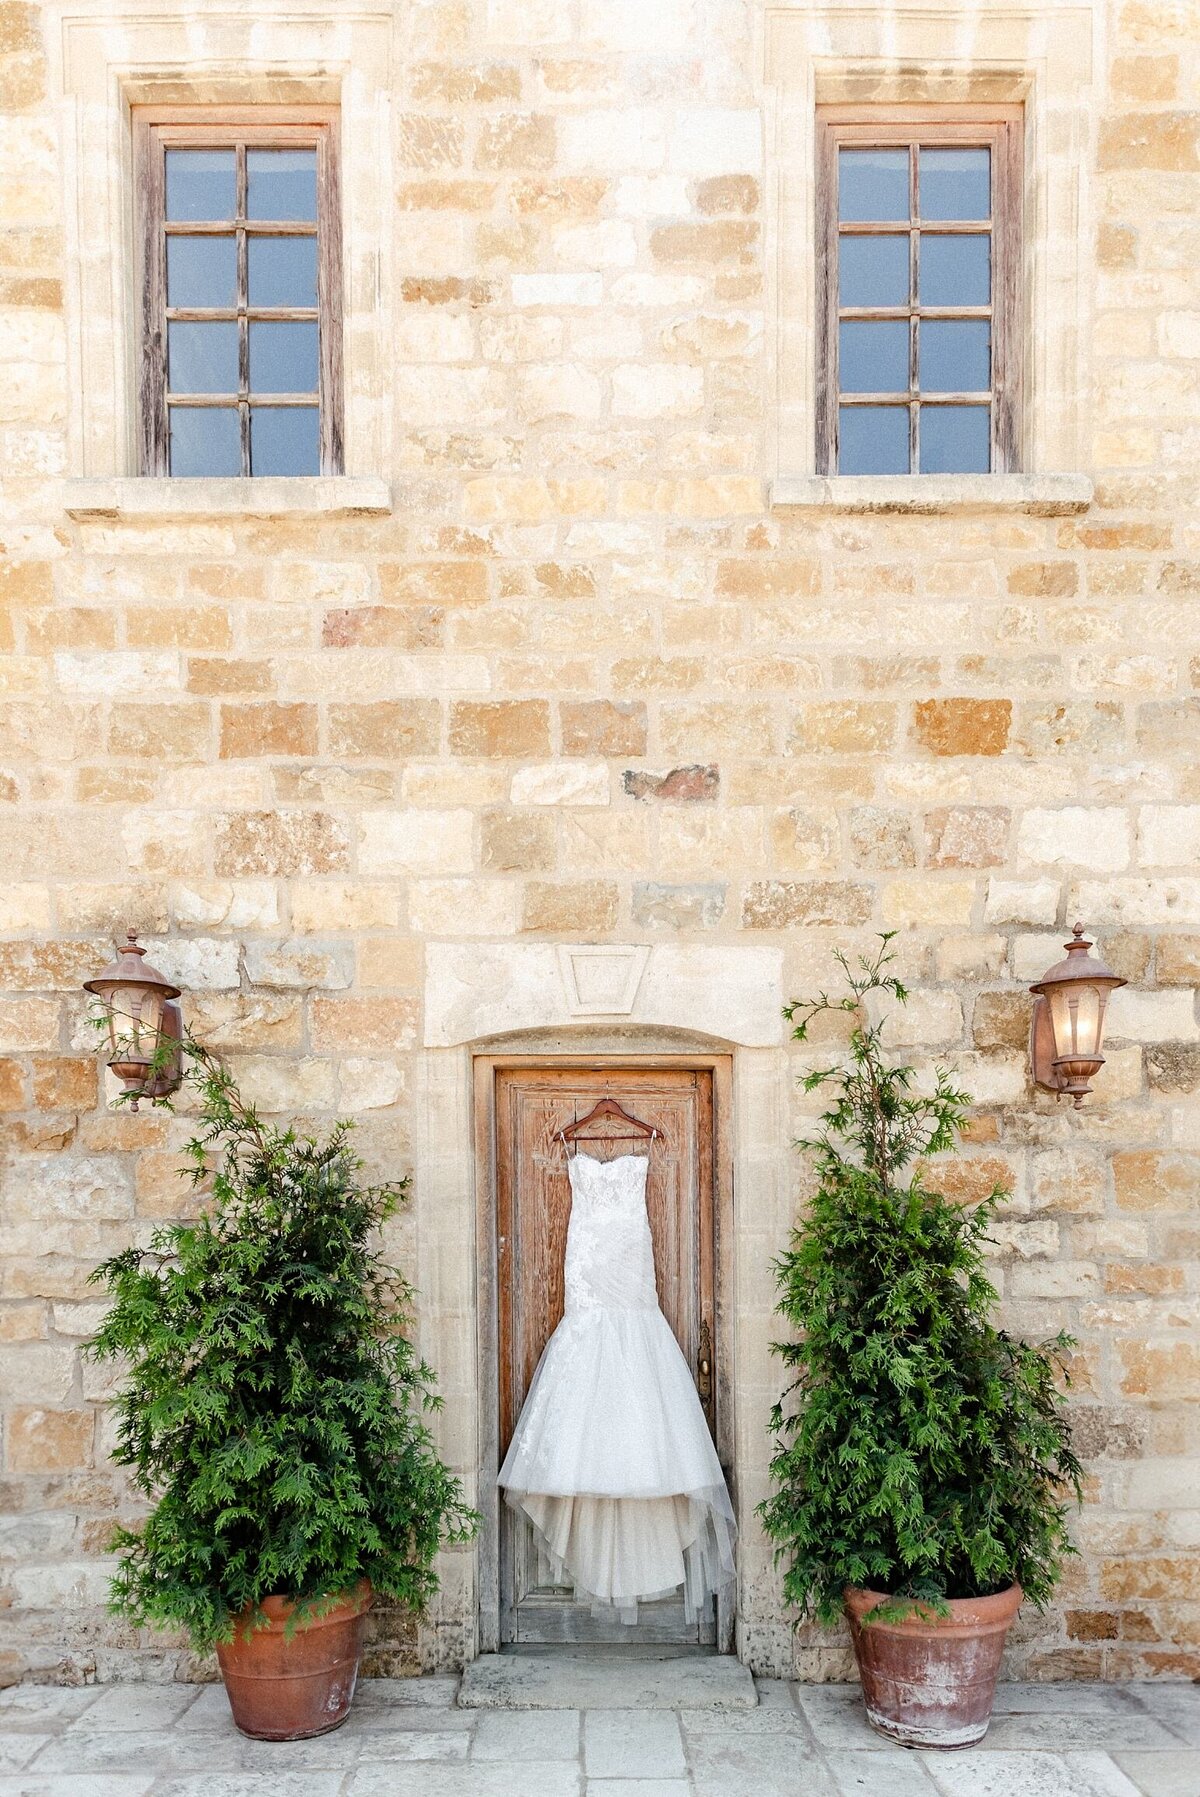 Wedding dress hanging on the door